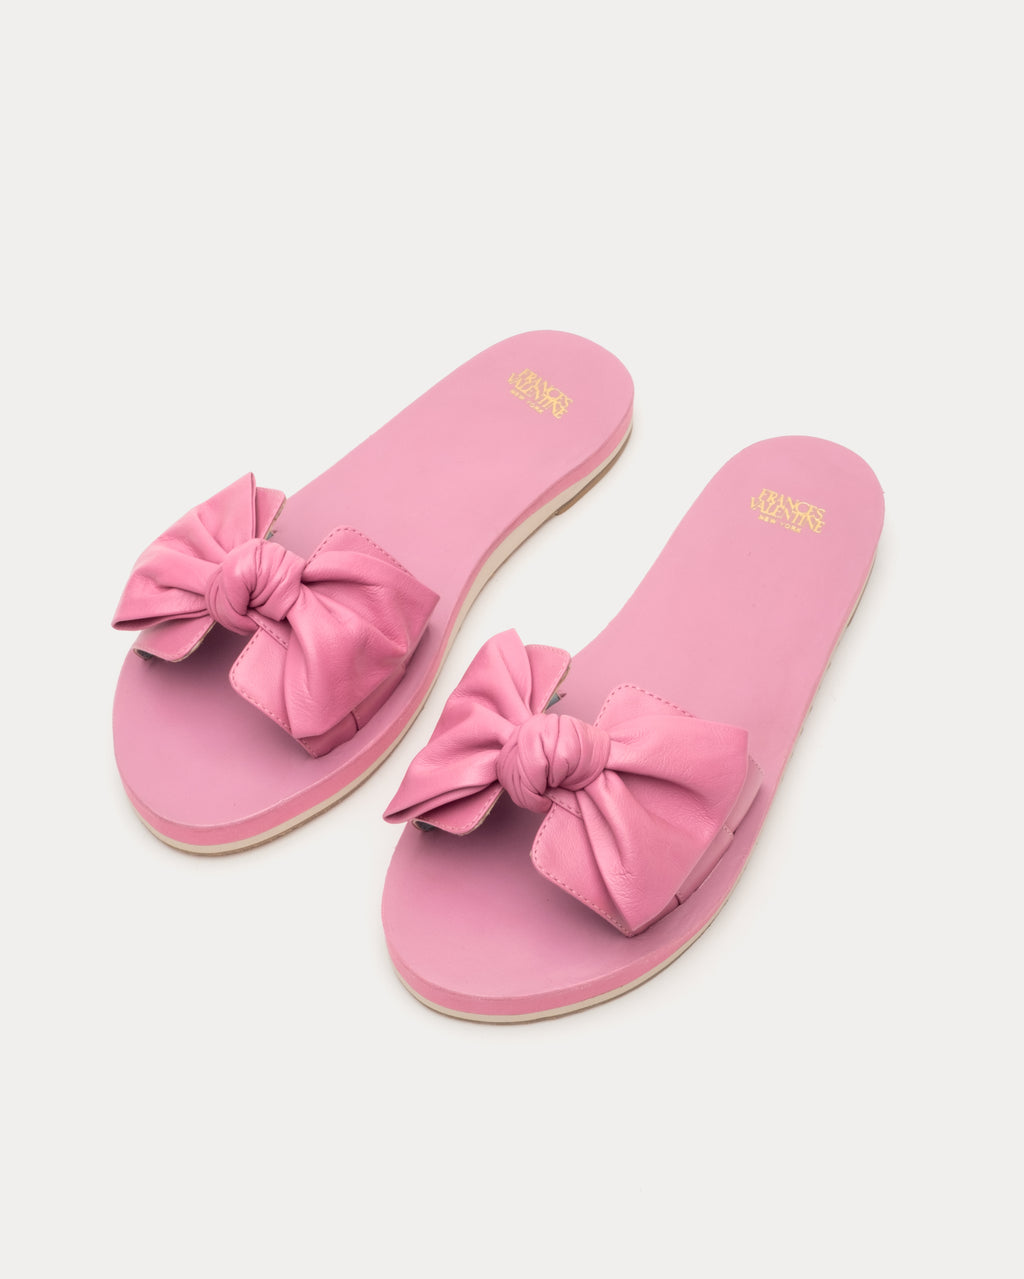 Sandy Cloud Slide Soft Nappa Pink Oyster – Frances Valentine